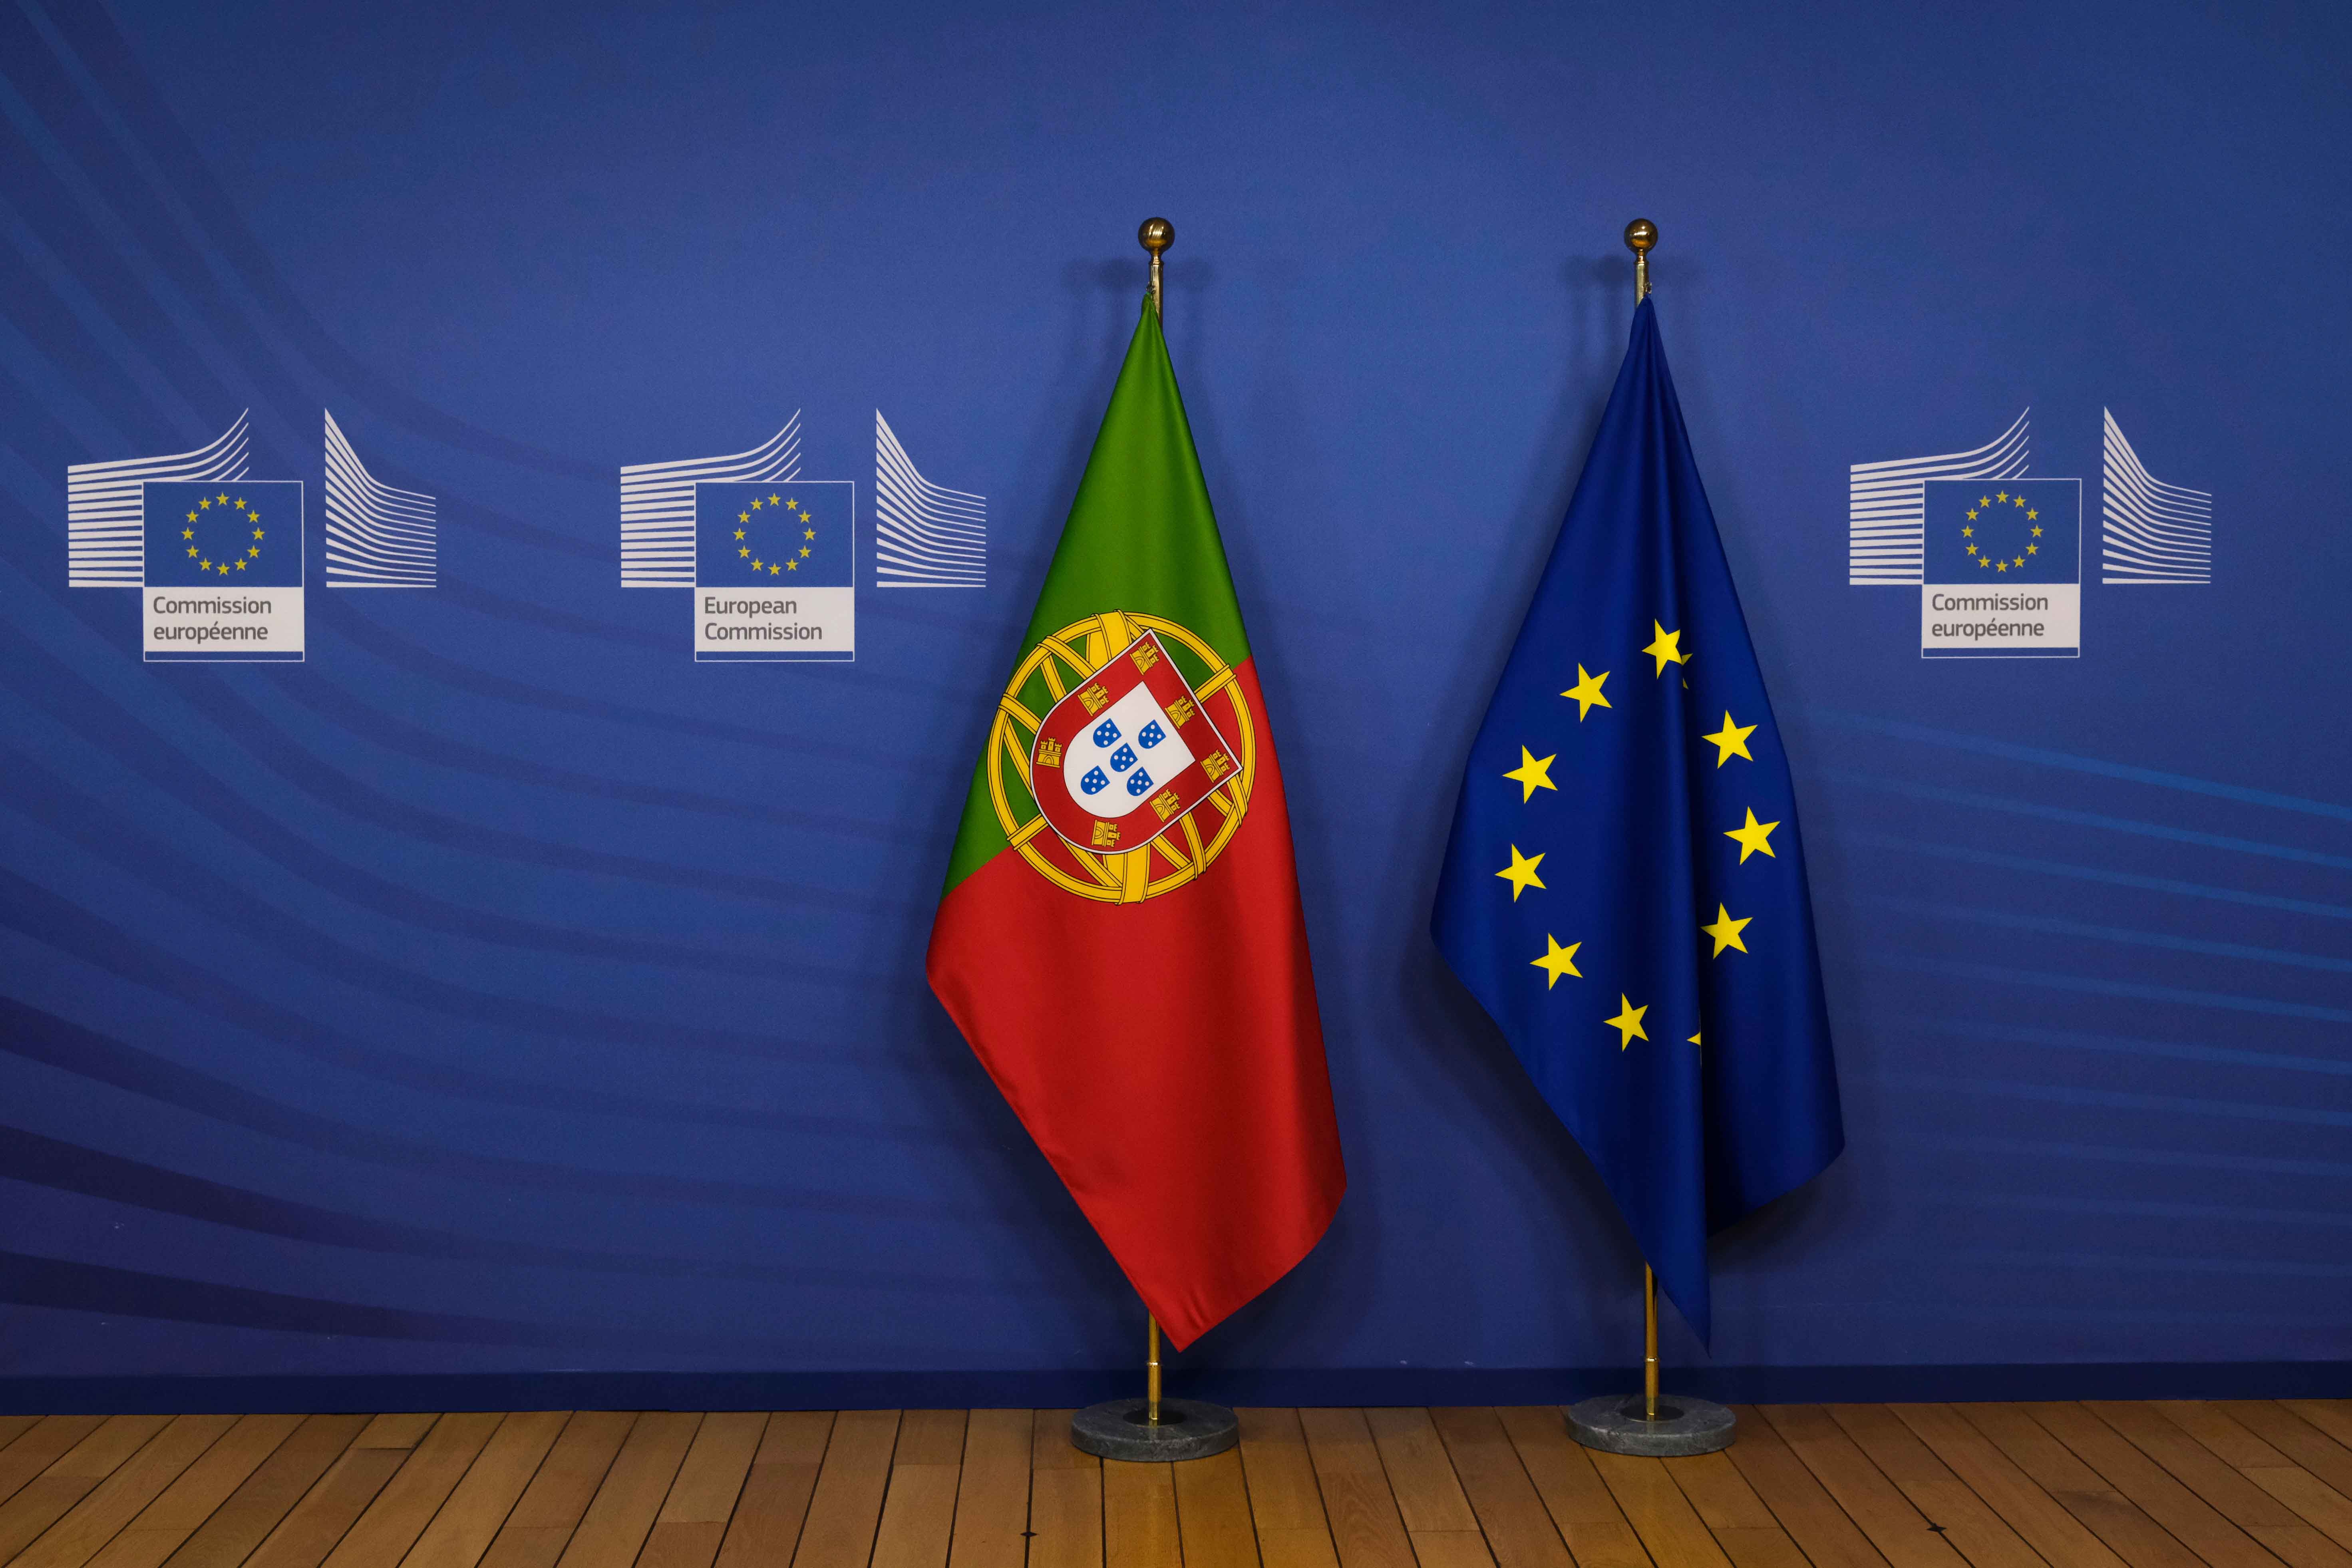 Bandeira de Portugal e Bandeira da União Europeia